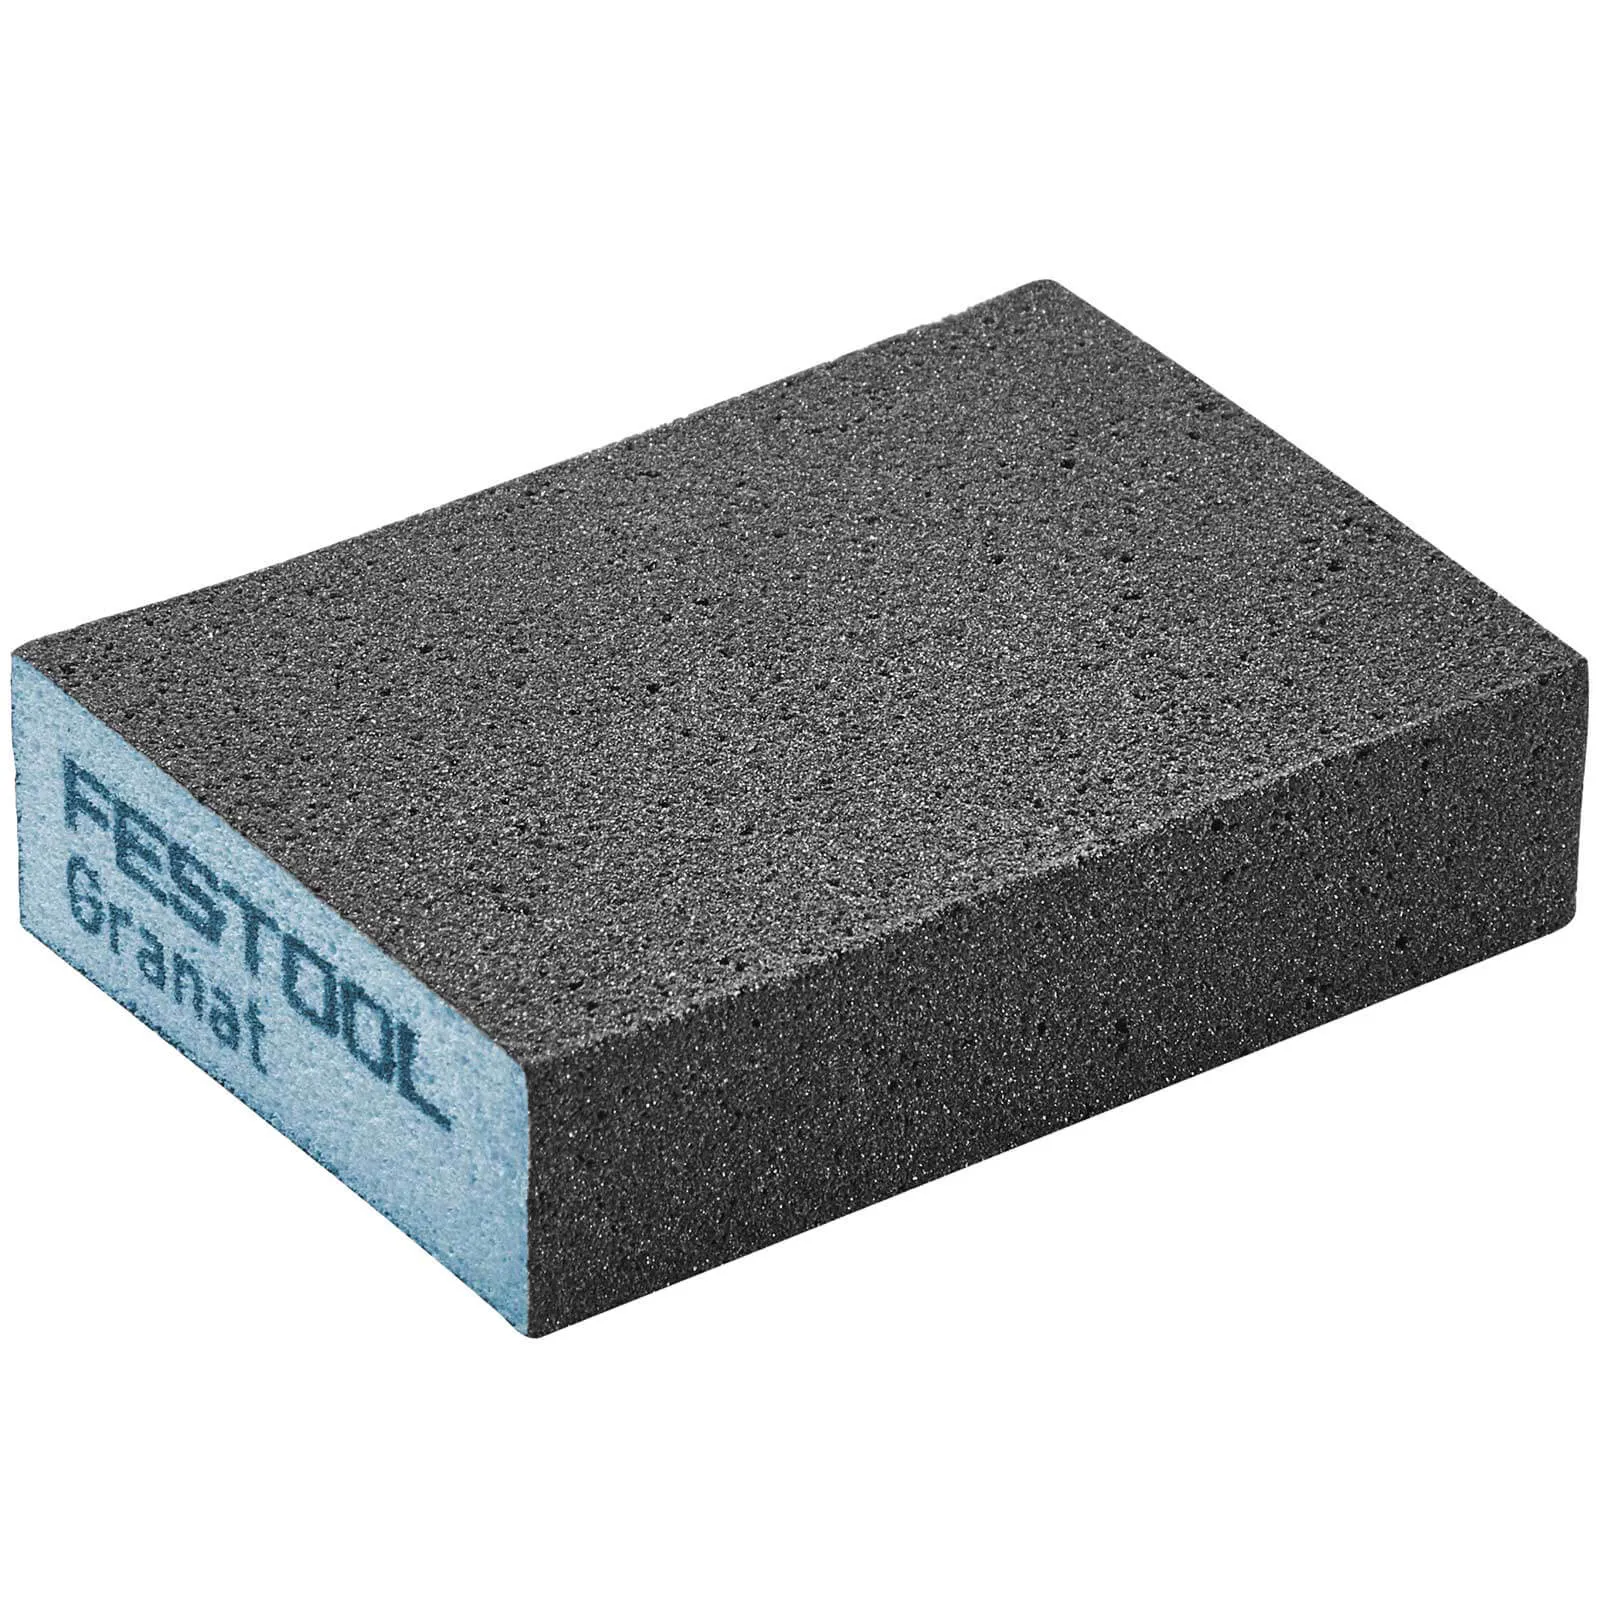 Festool Abrasive Hand Sanding Sponge Block - 36g, Pack of 6